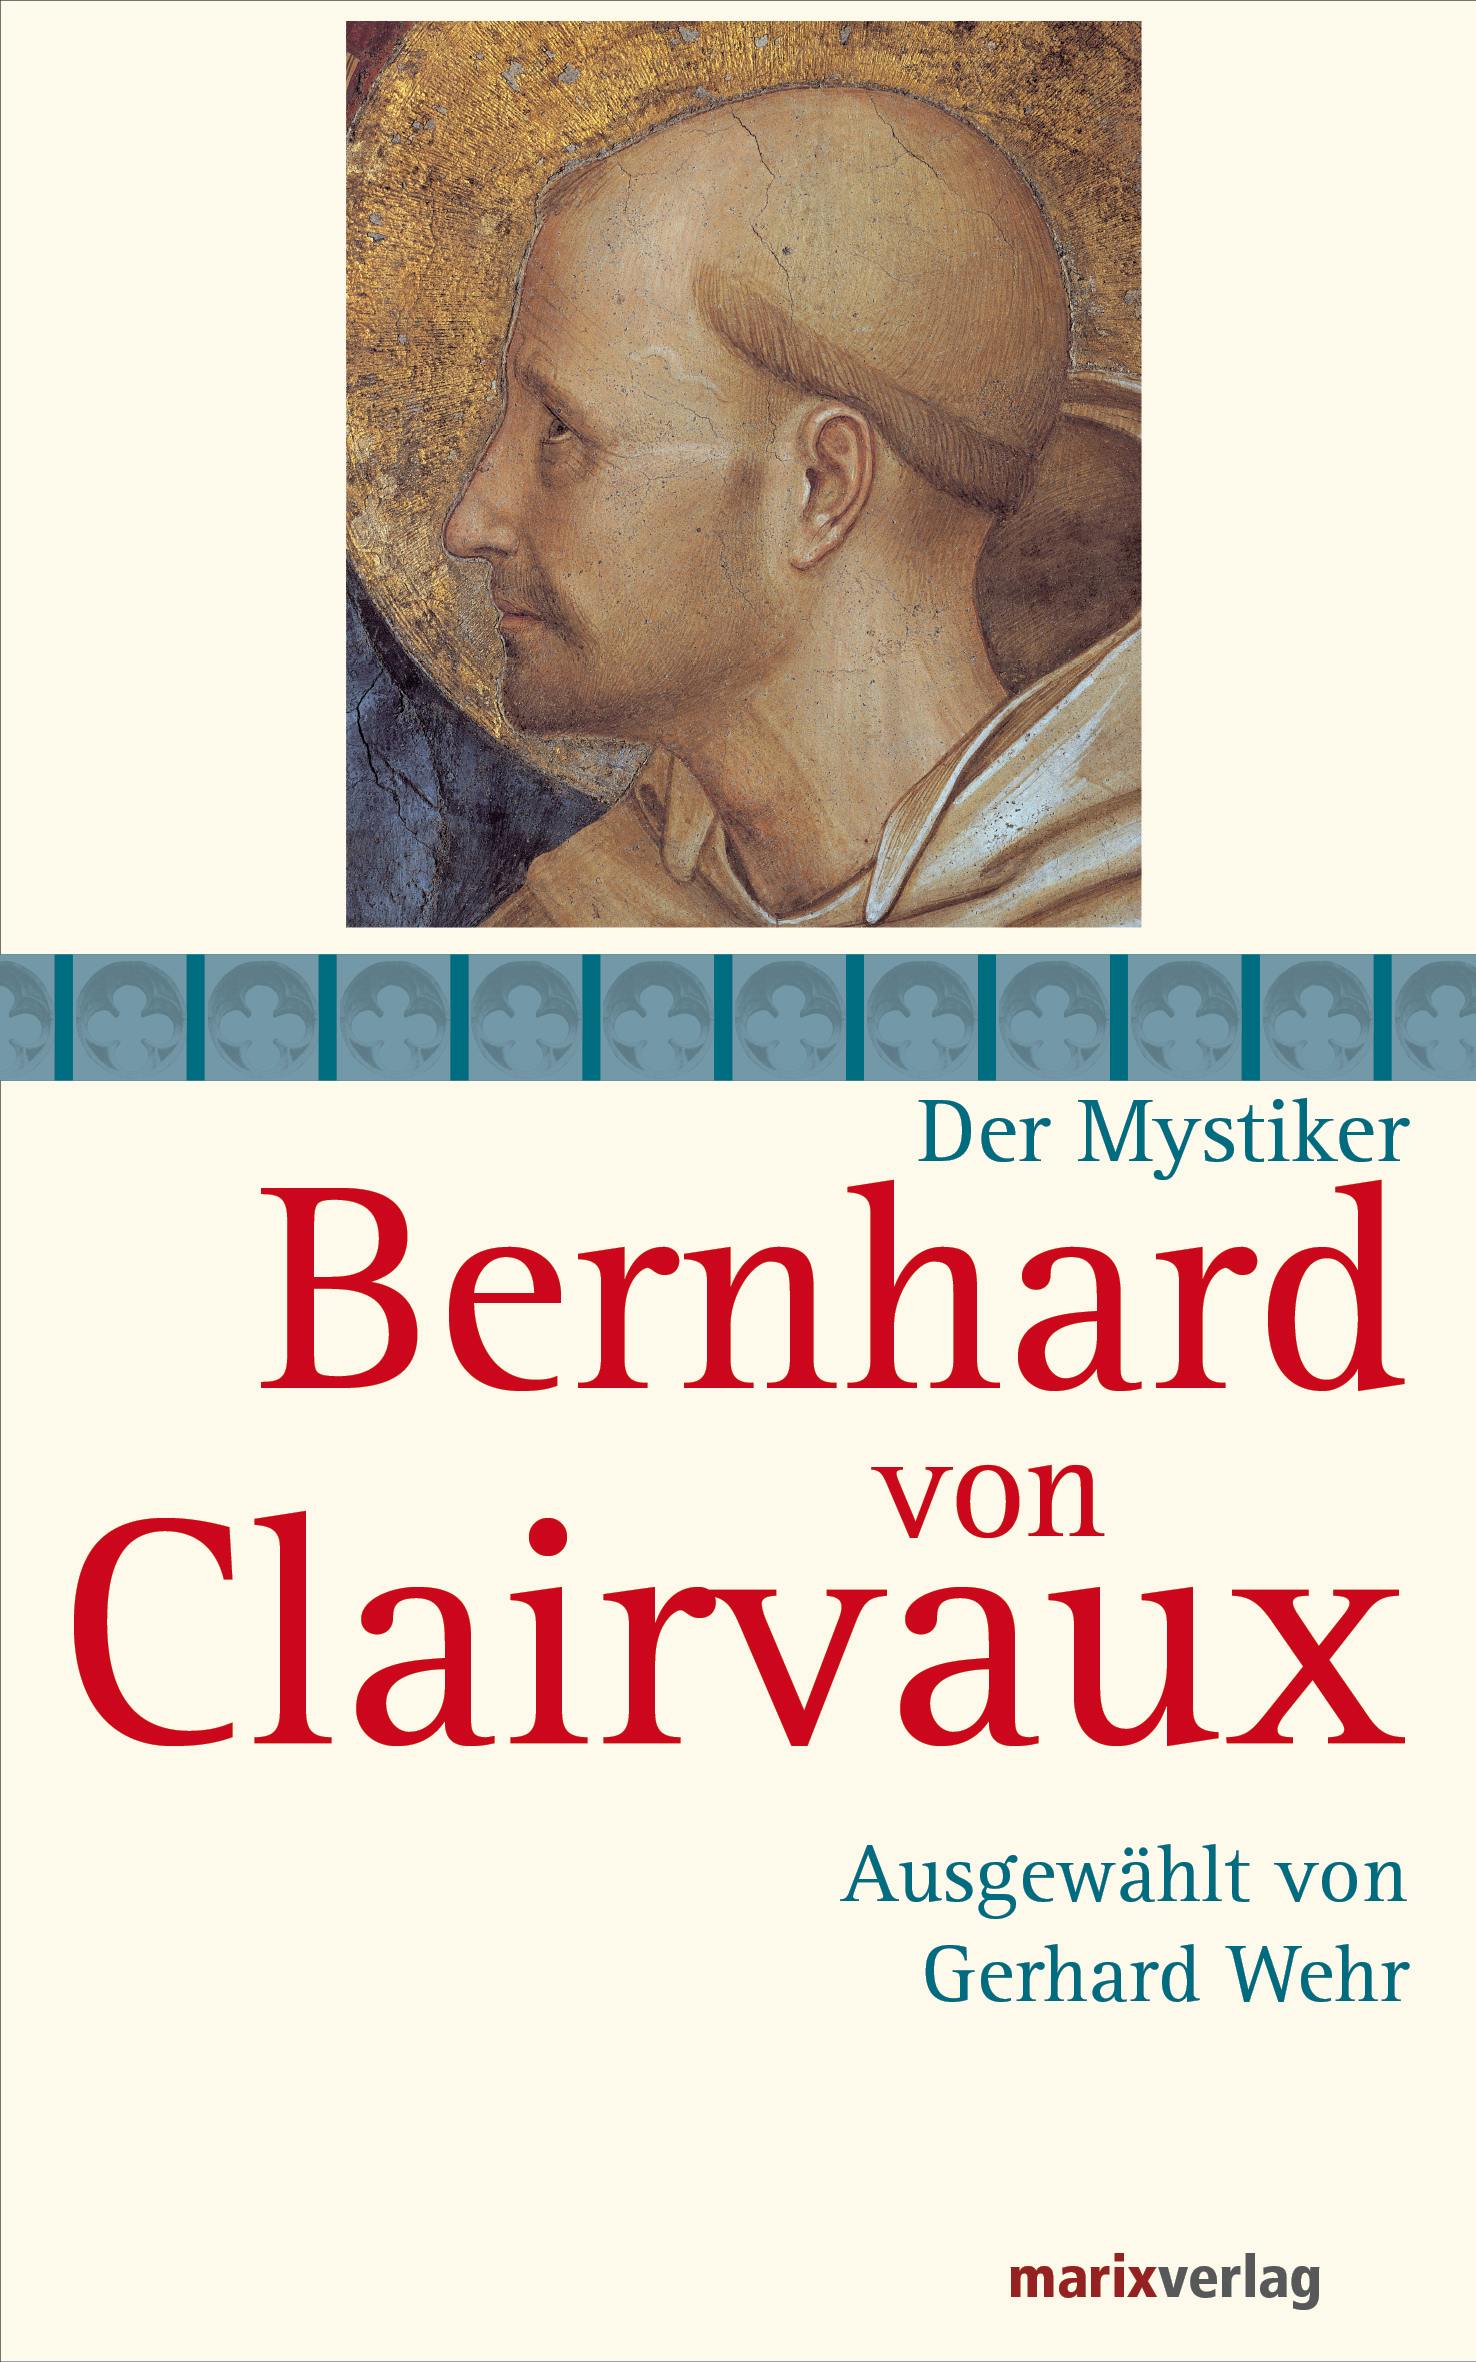 Bernhard von Clairvaux: Ausgewählt von Gerhard Wehr - Bernhard von Clairvaux